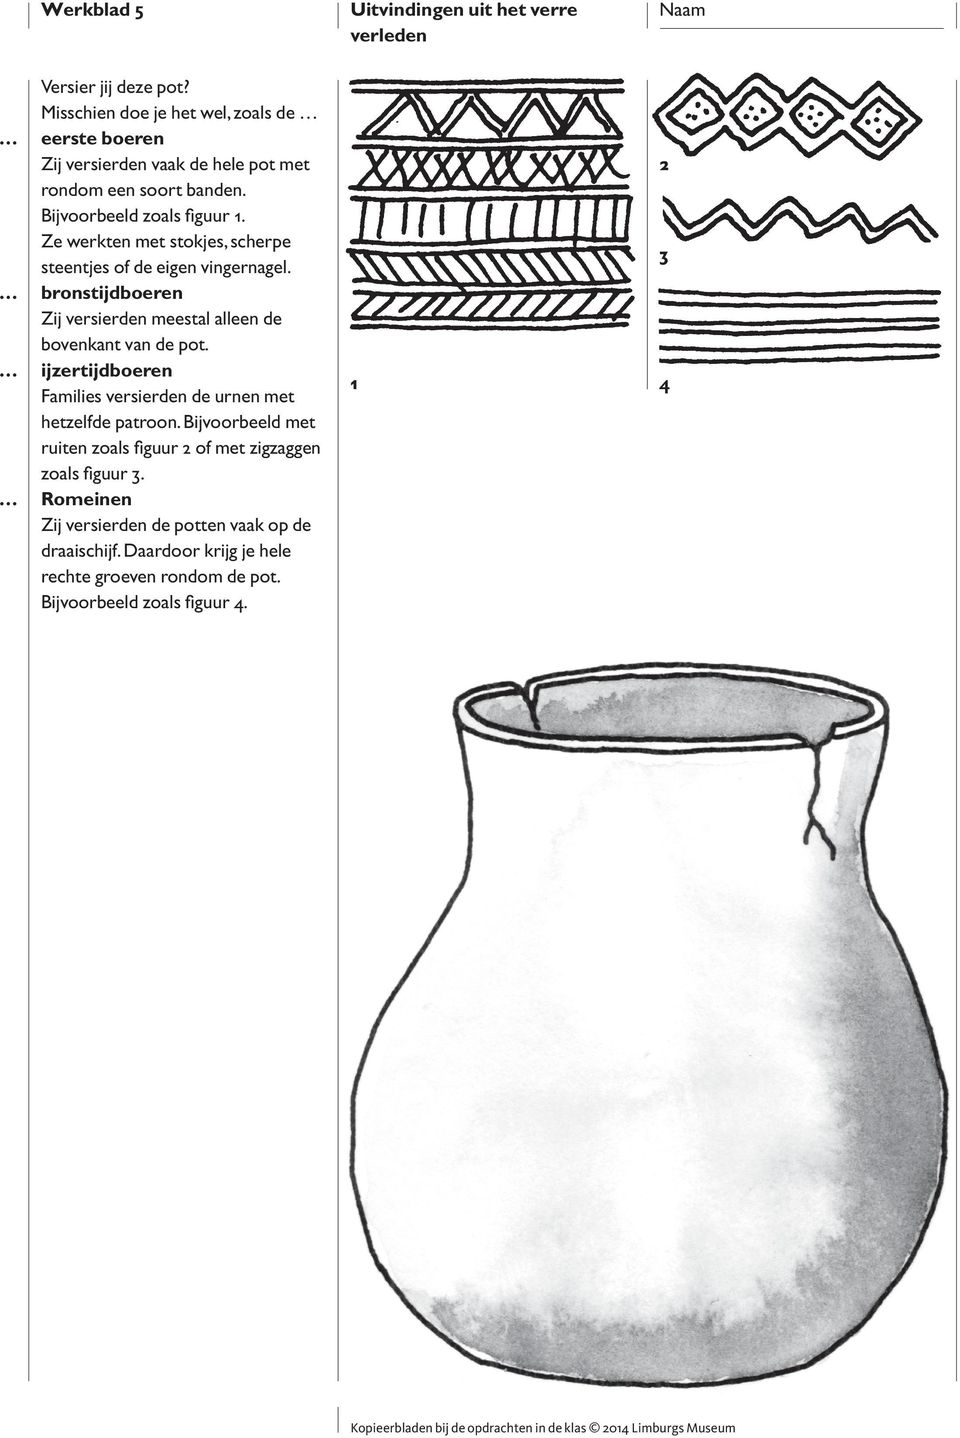 Ze werkten met stokjes, scherpe steentjes of de eigen vingernagel. bronstijdboeren Zij versierden meestal alleen de bovenkant van de pot.